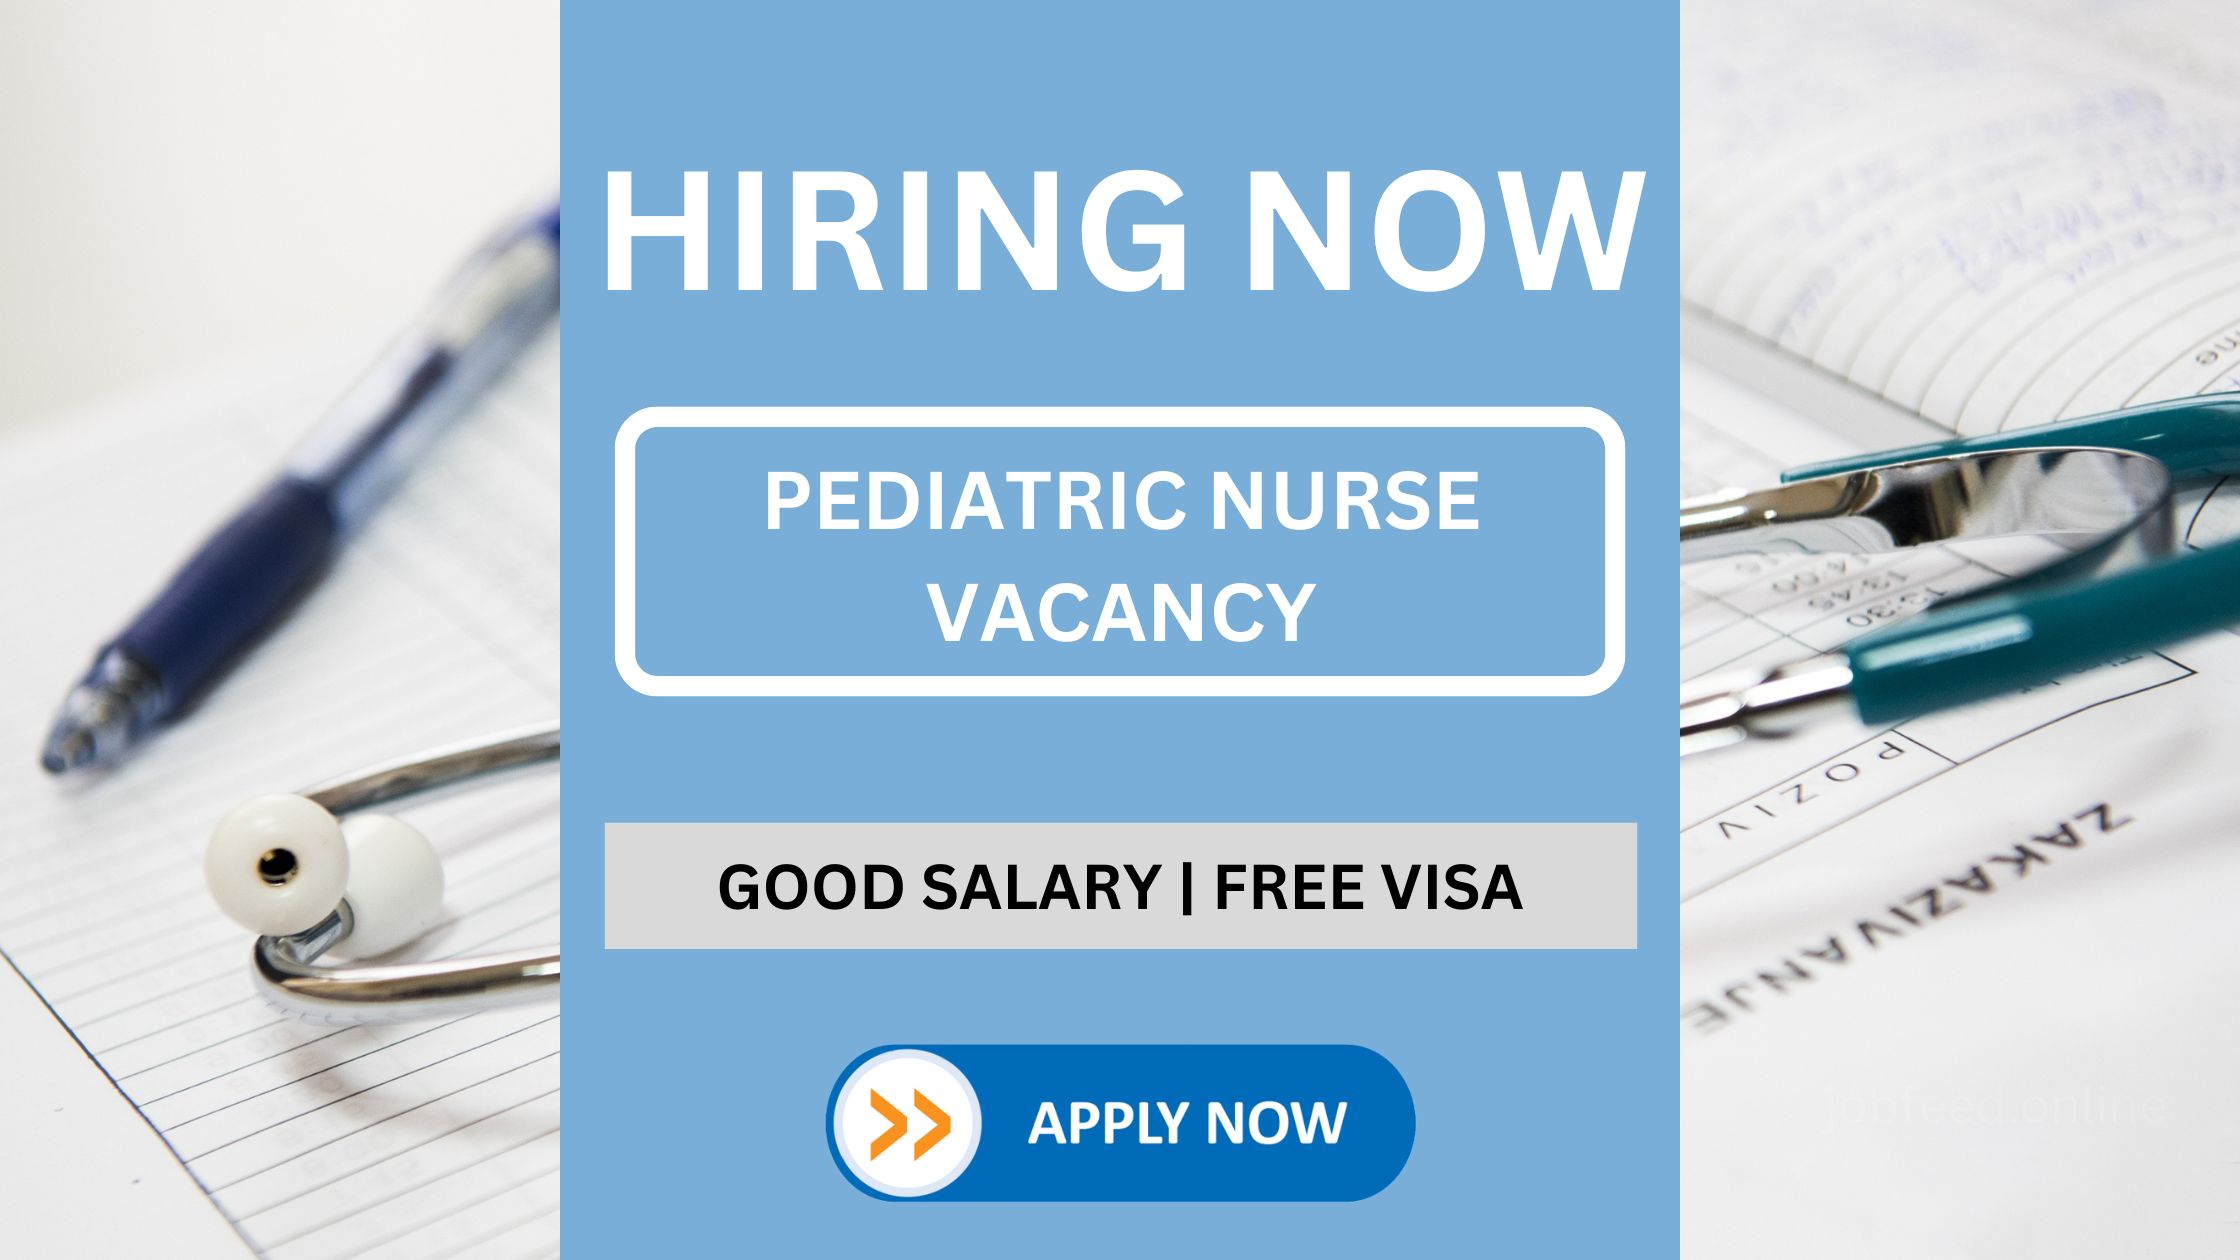 وظيفة ممرضة أطفال - تأشيرة مجانية وراتب جيد